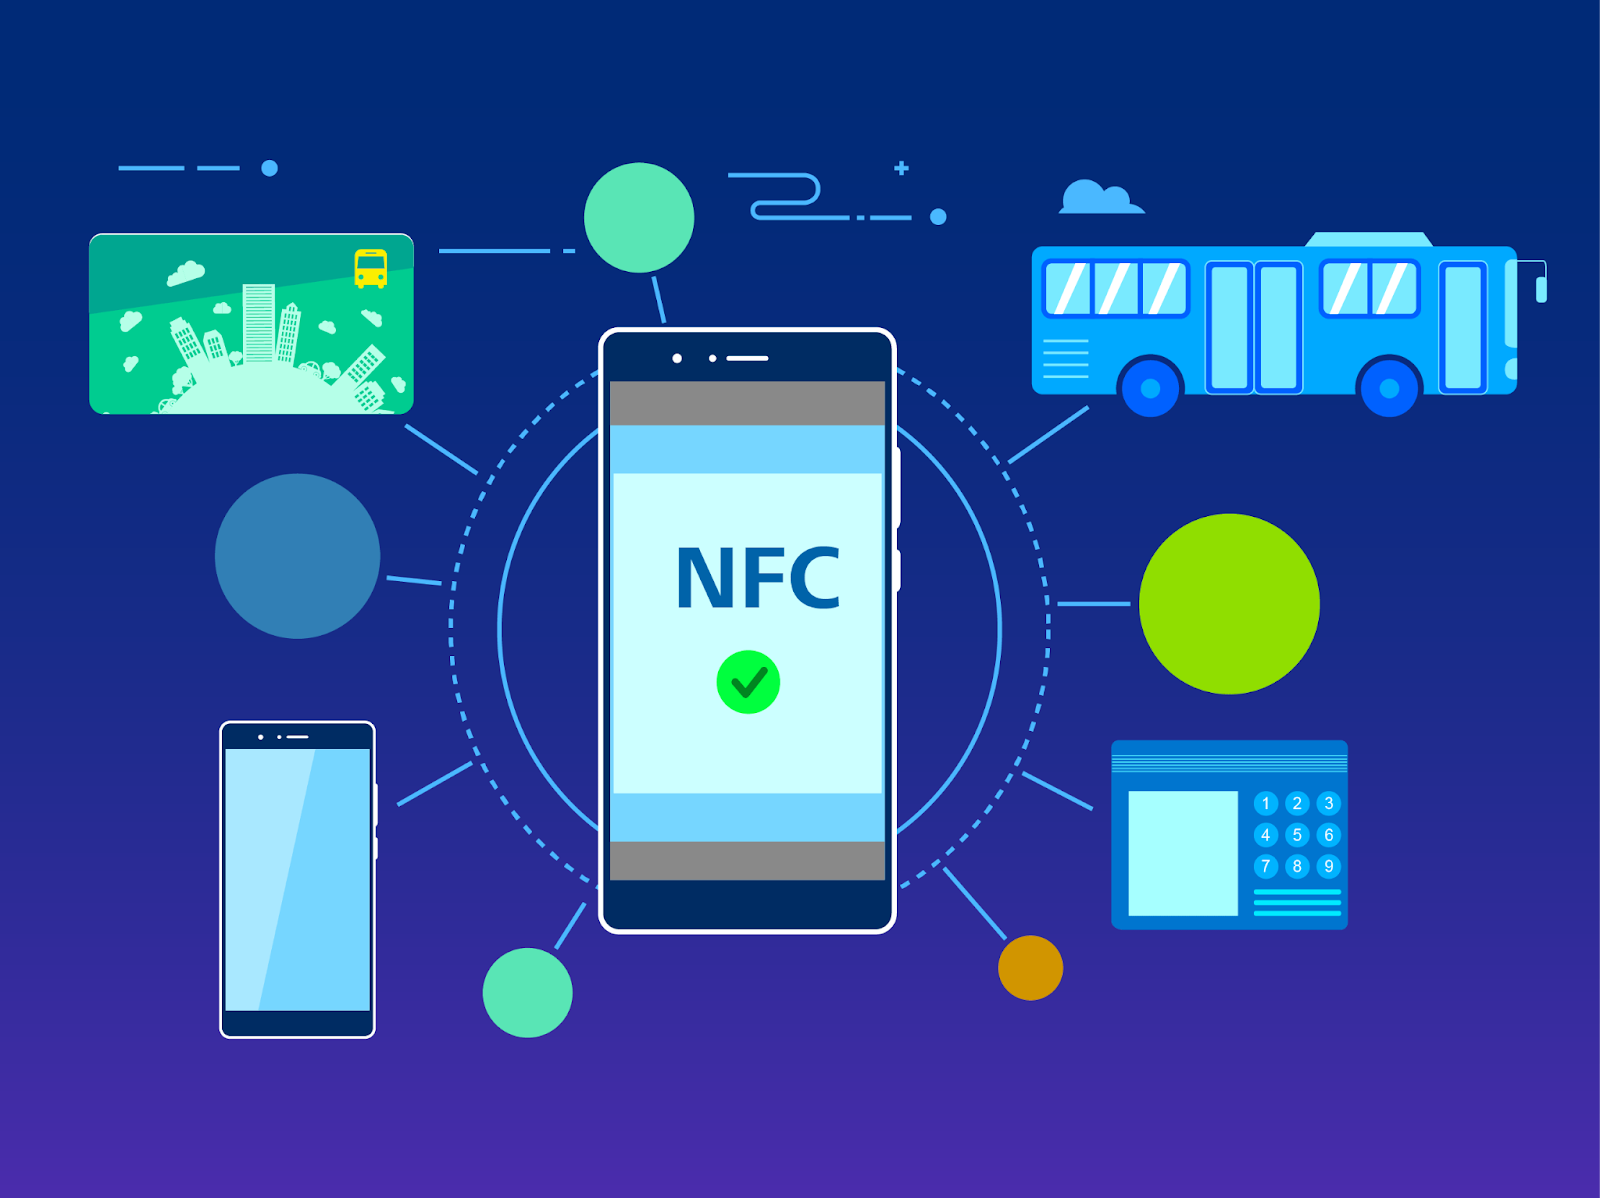 grafika ukazująca usługę NFC